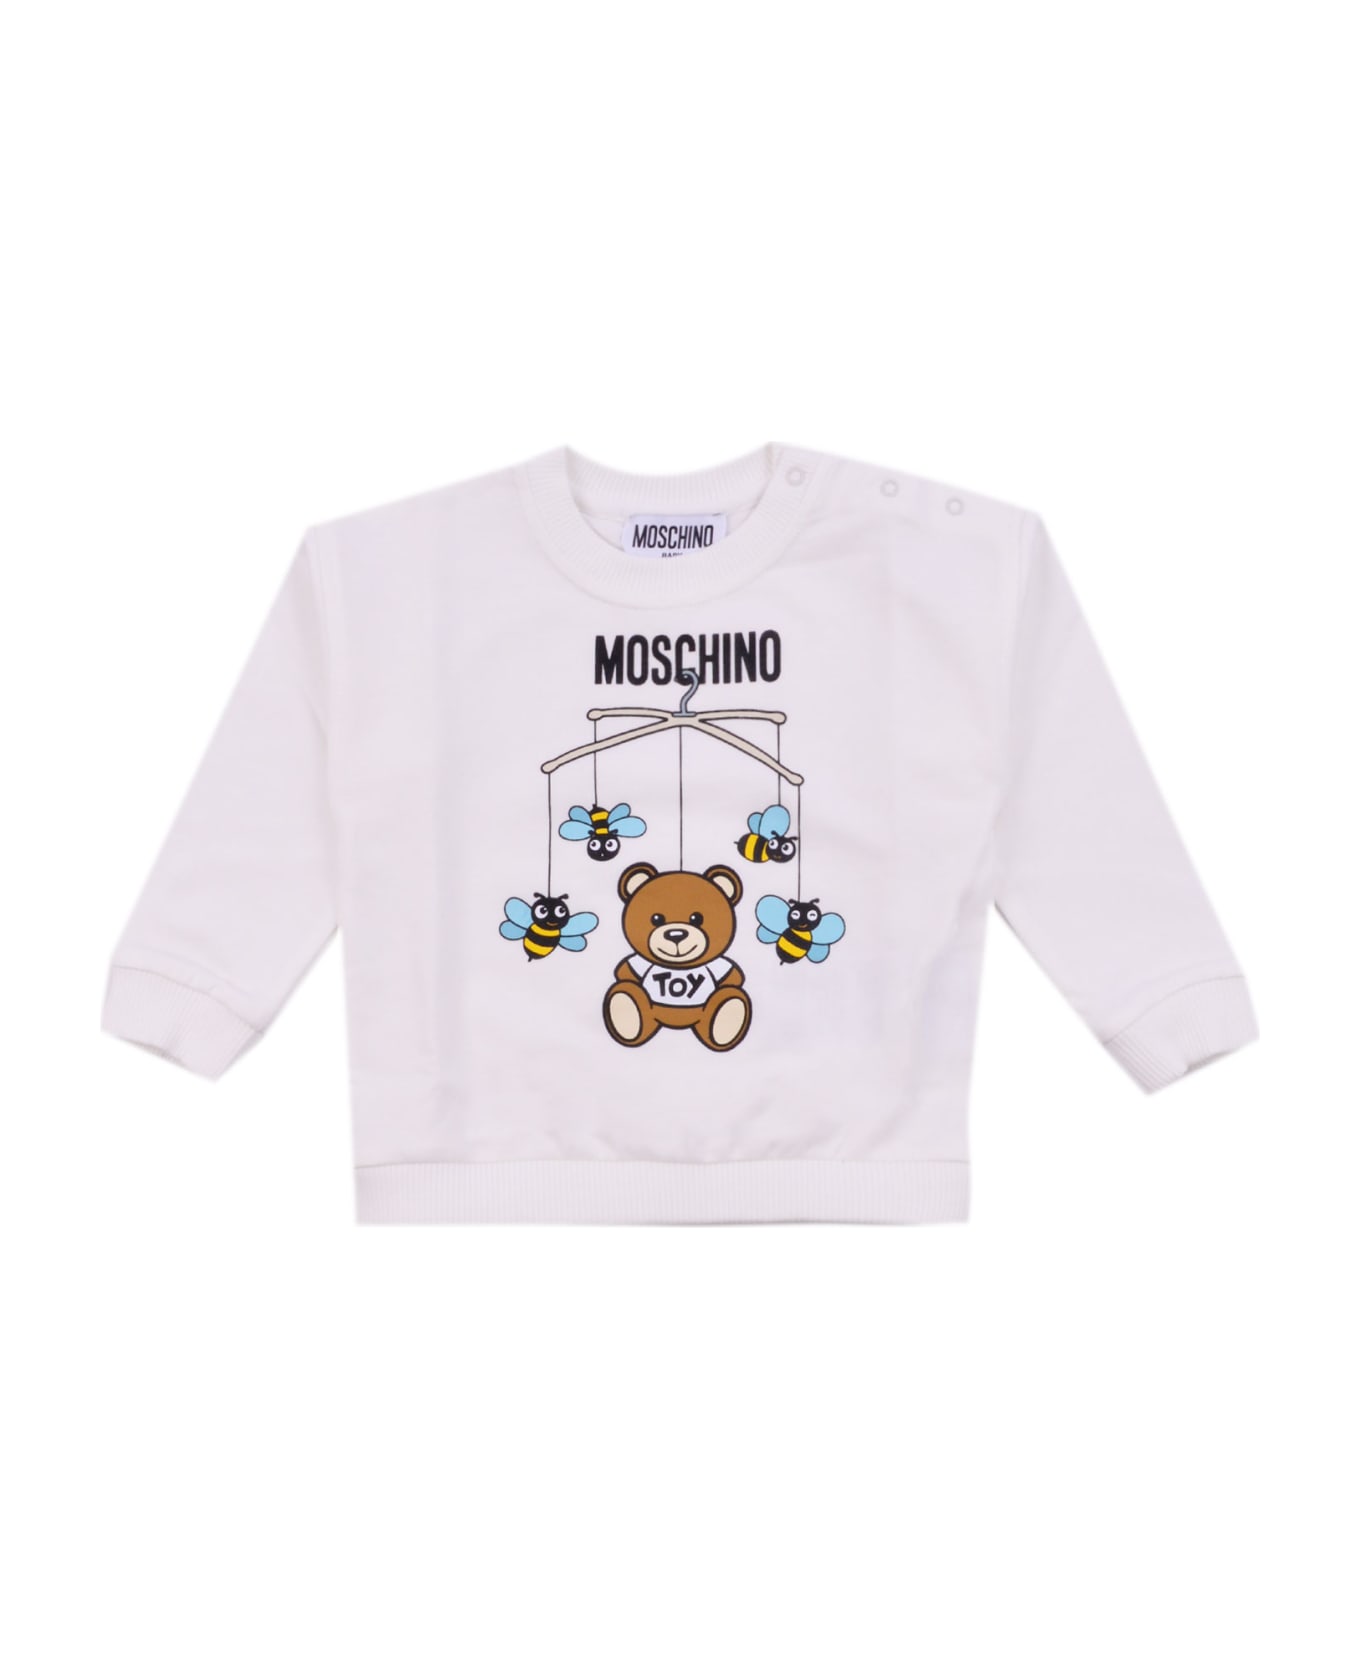 Moschino Cotton Sweatshirt - White